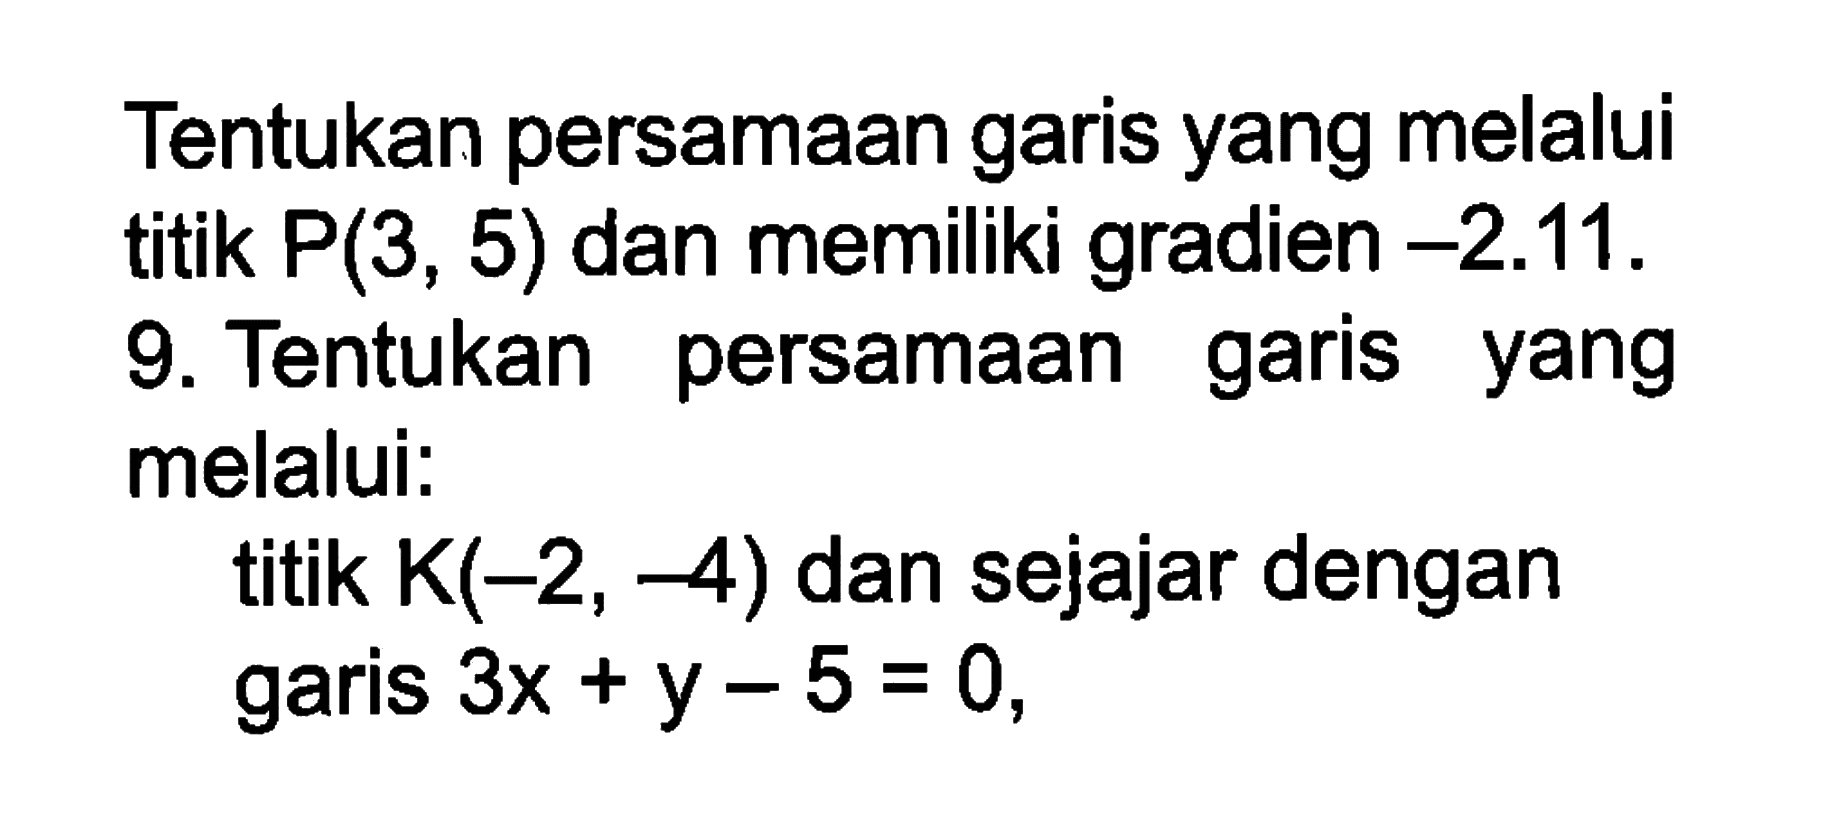 Tentukan persamaan garis yang melalui titik P(3, 5) dan memiliki gradien -2.11. 9. Tentukan persamaan garis yang melalui: titik K(-2, -4) dan sejajar dengan garis 3x + y - 5 = 0.